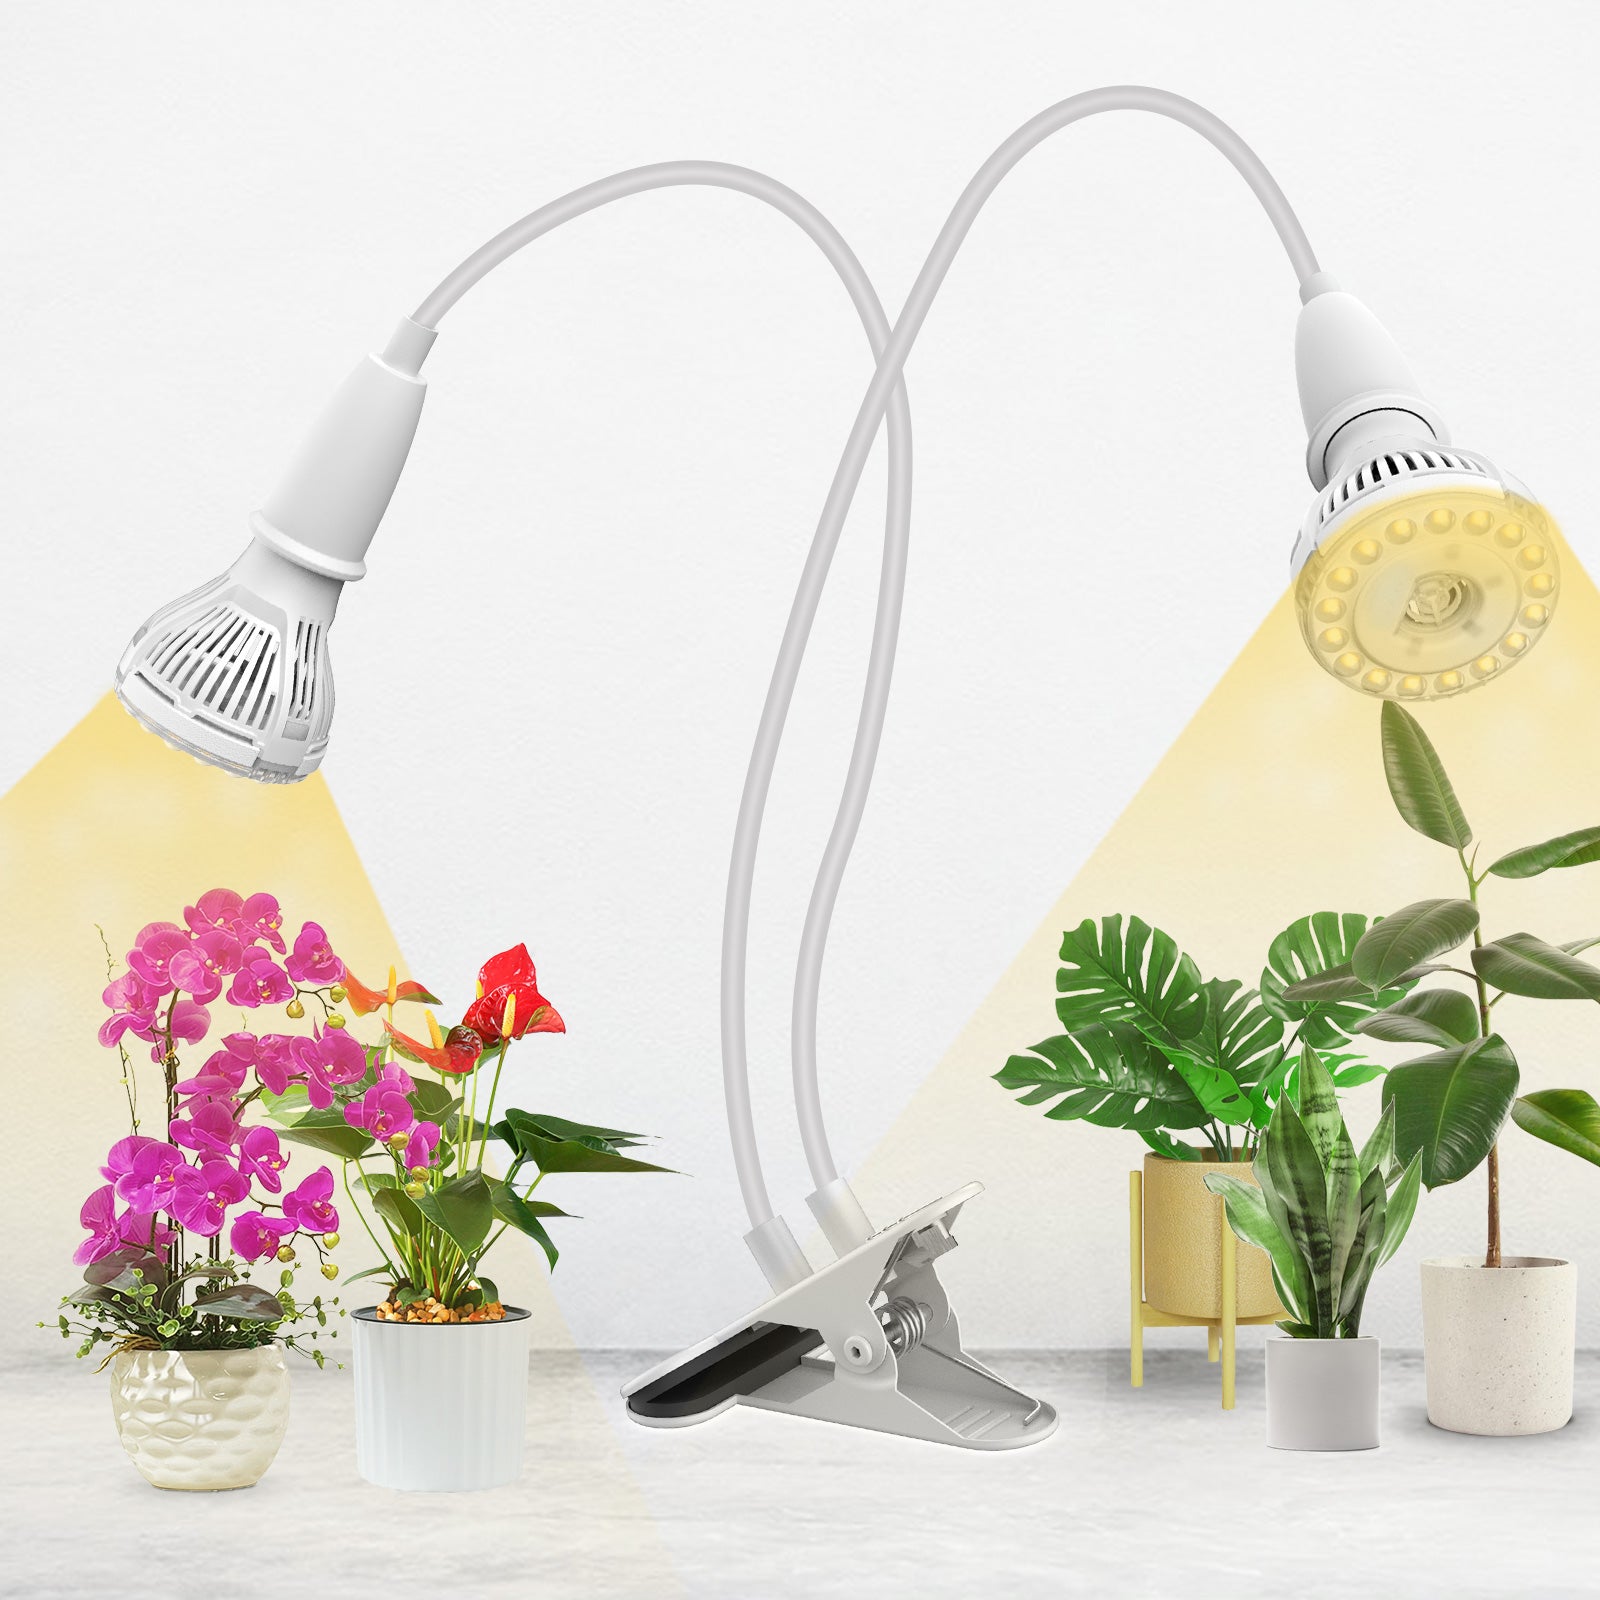 Vejhus shuttle Gøre husarbejde 20W Full Spectrum LED Grow Light natural light for Indoor Plants